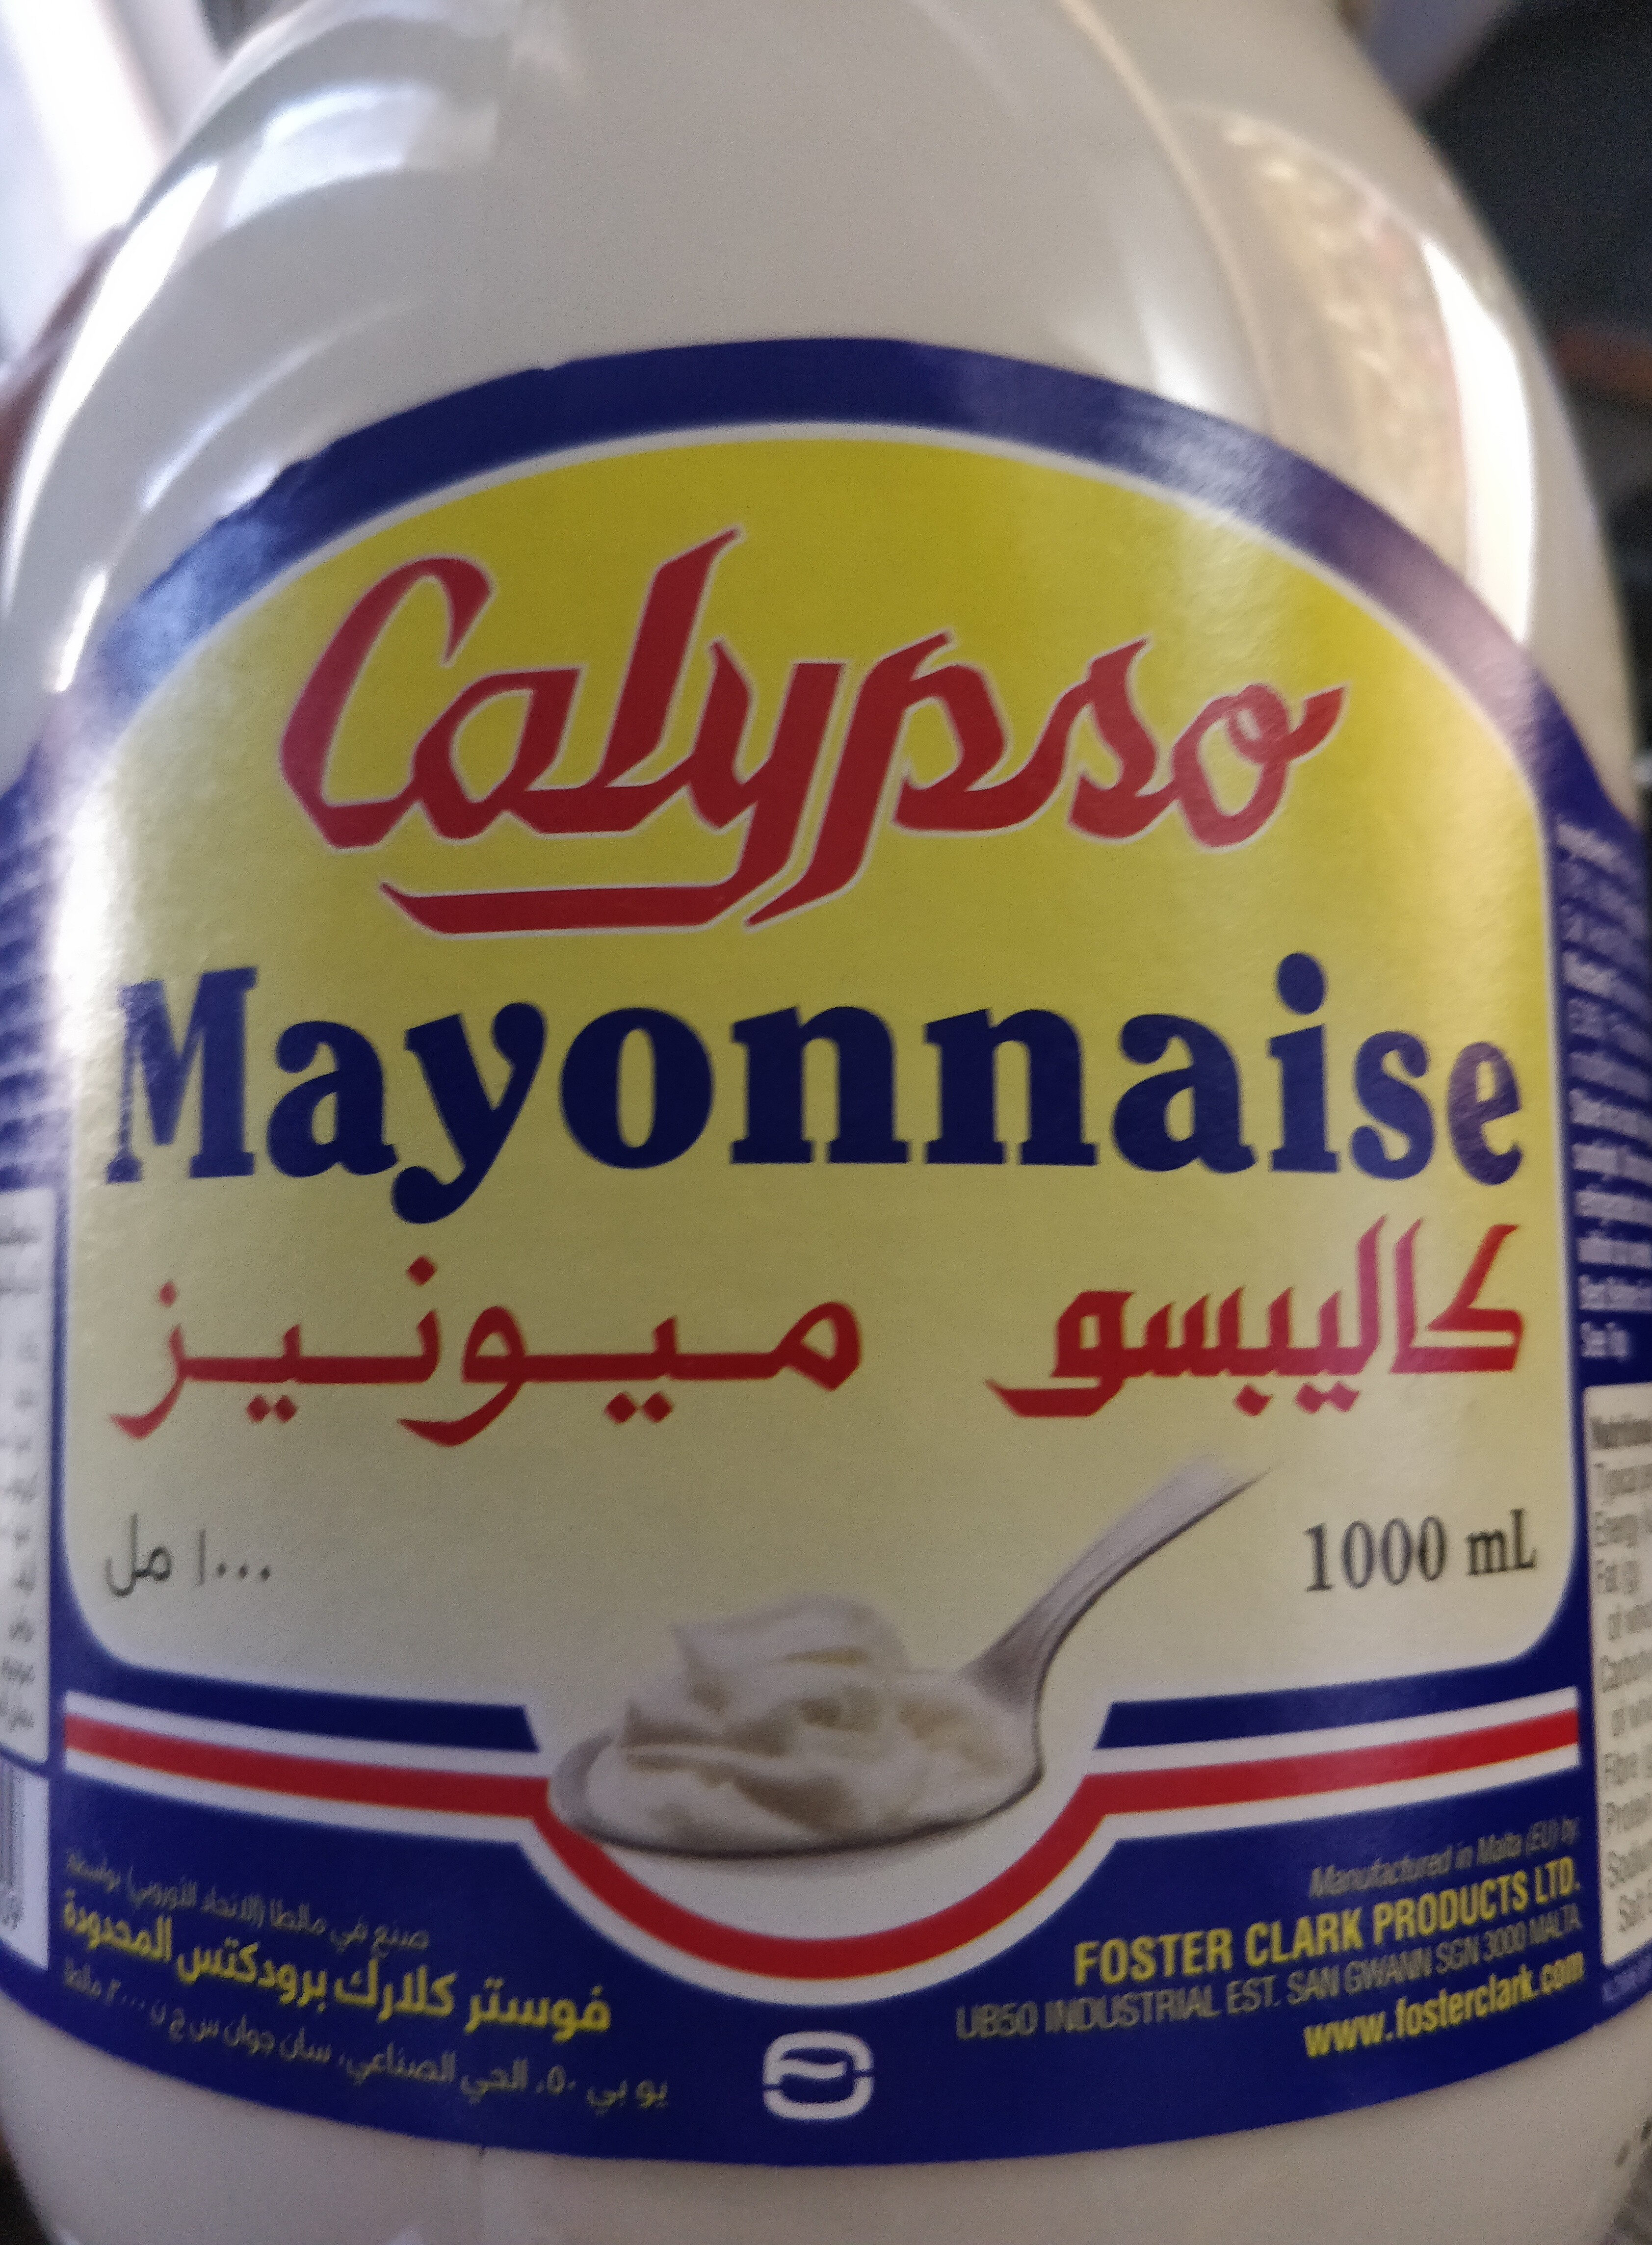 mayonnaise - Producte - en